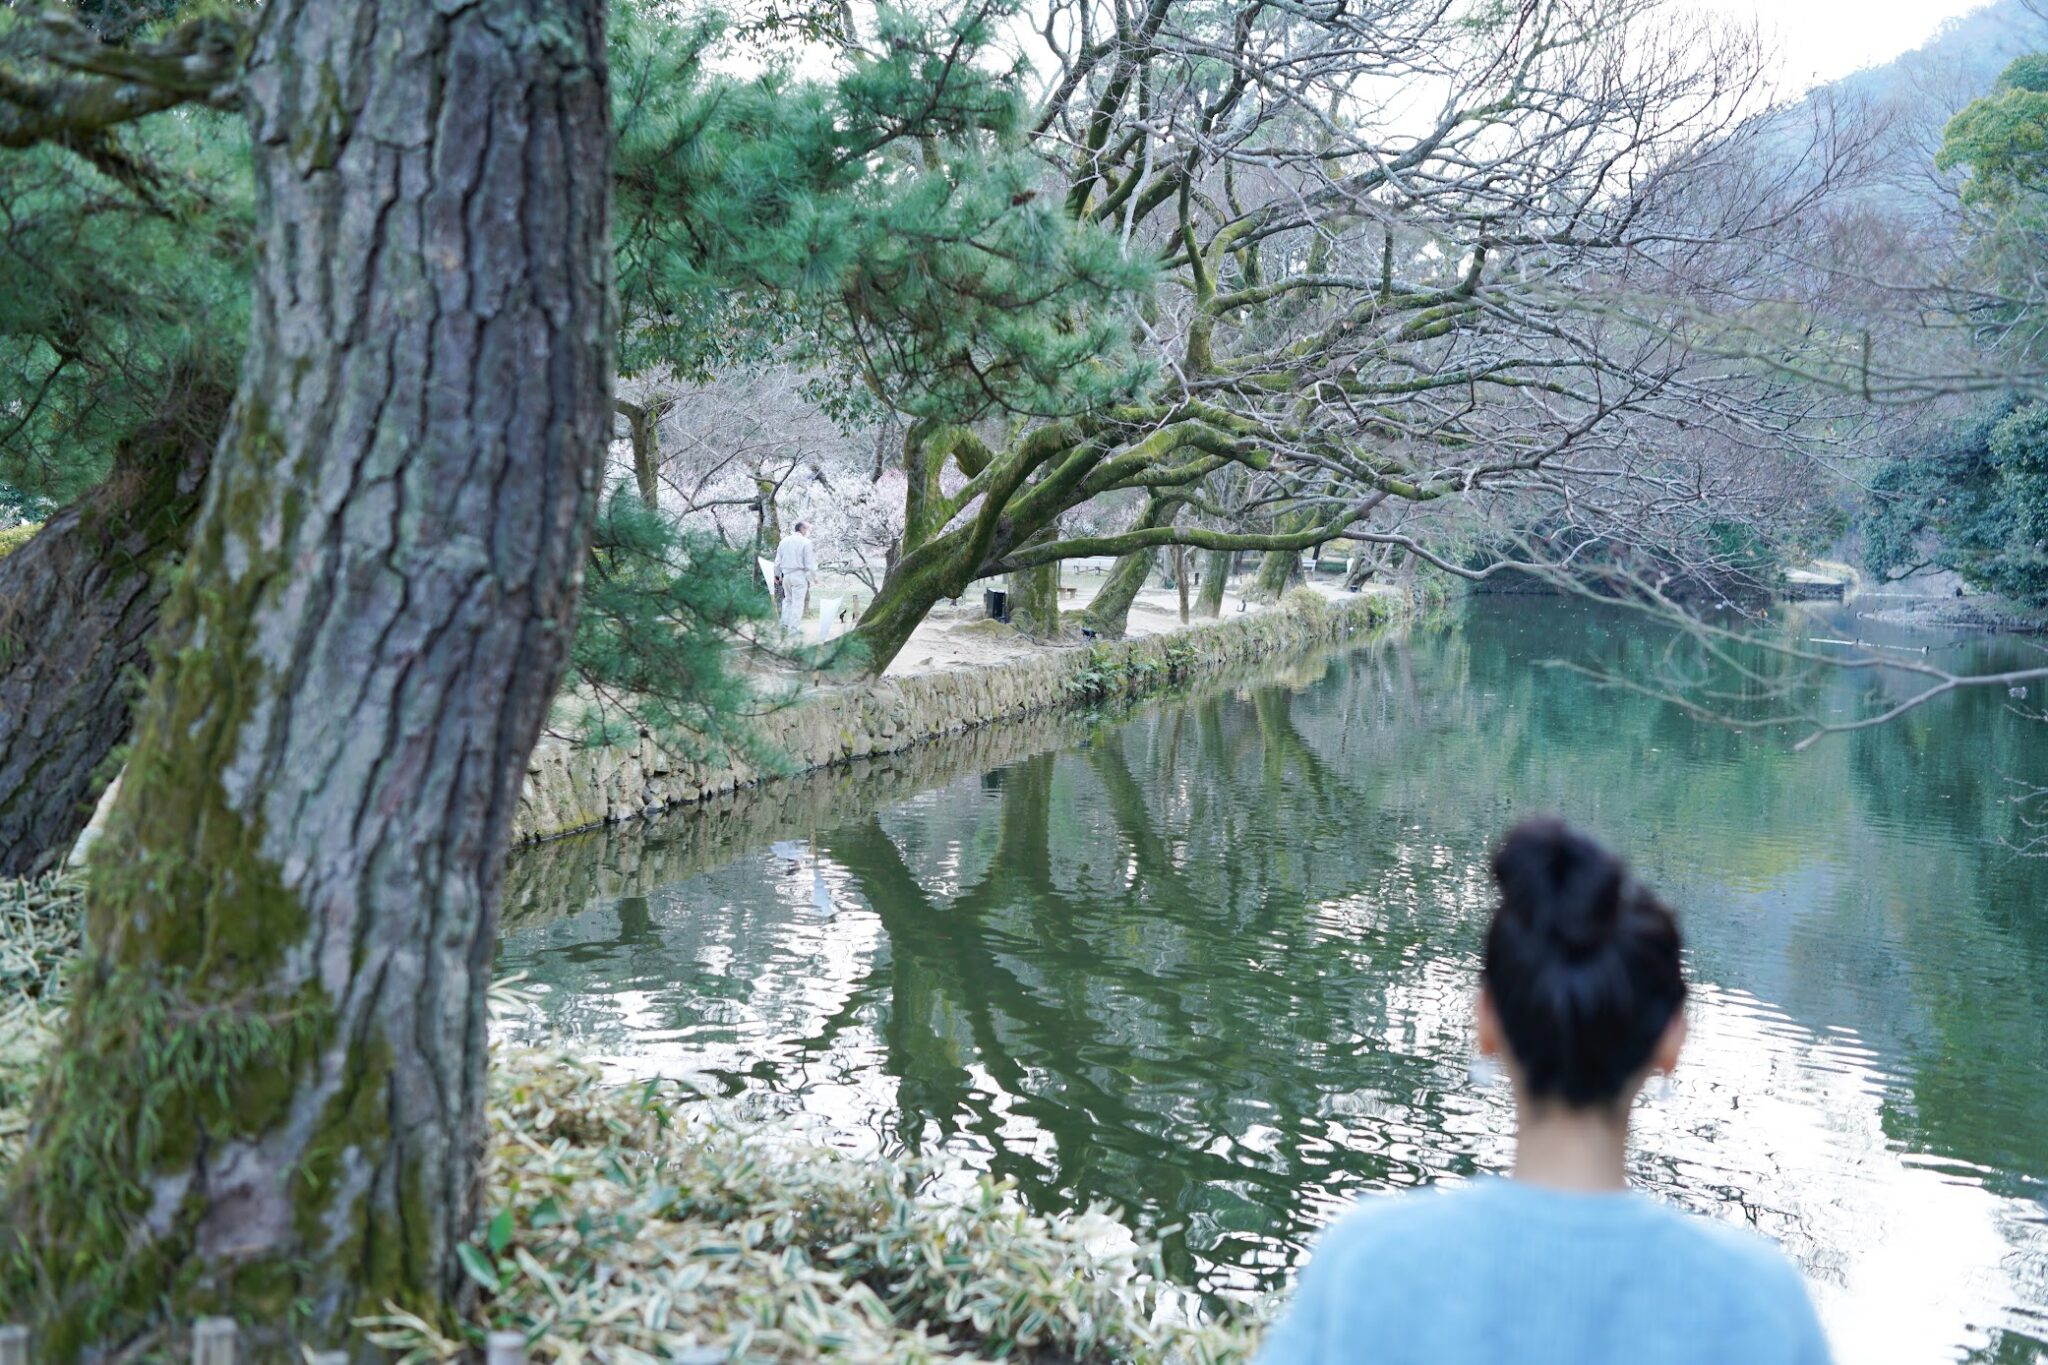 栗林公園 水の物語を感じるスポットまとめ – Ritsurin Garden, Water Tourism of Kagawa